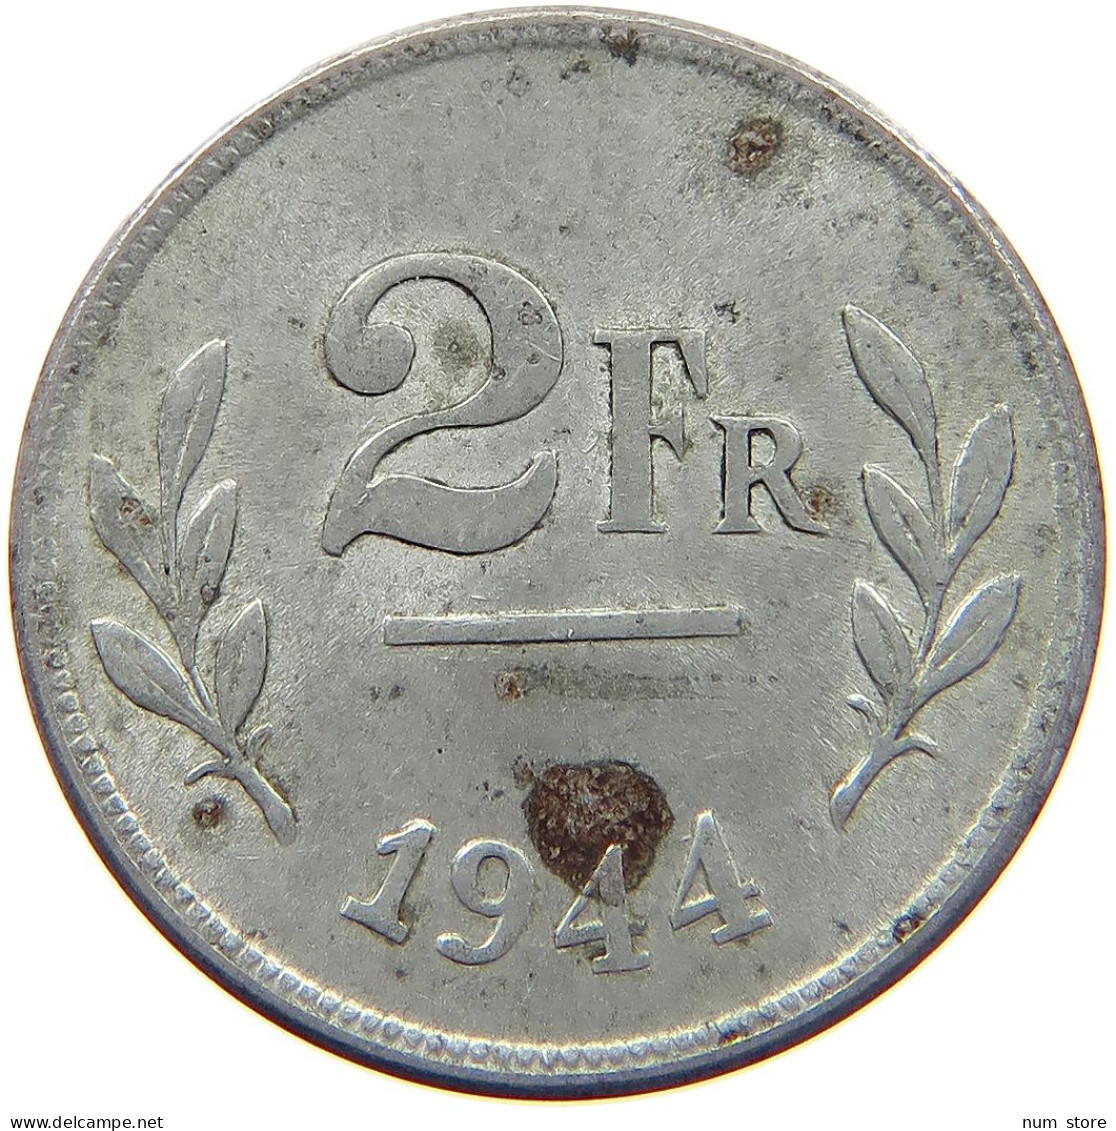 BELGIUM 2 FRANCS 1944 #c007 0281 - 2 Francs (1944 Libération)